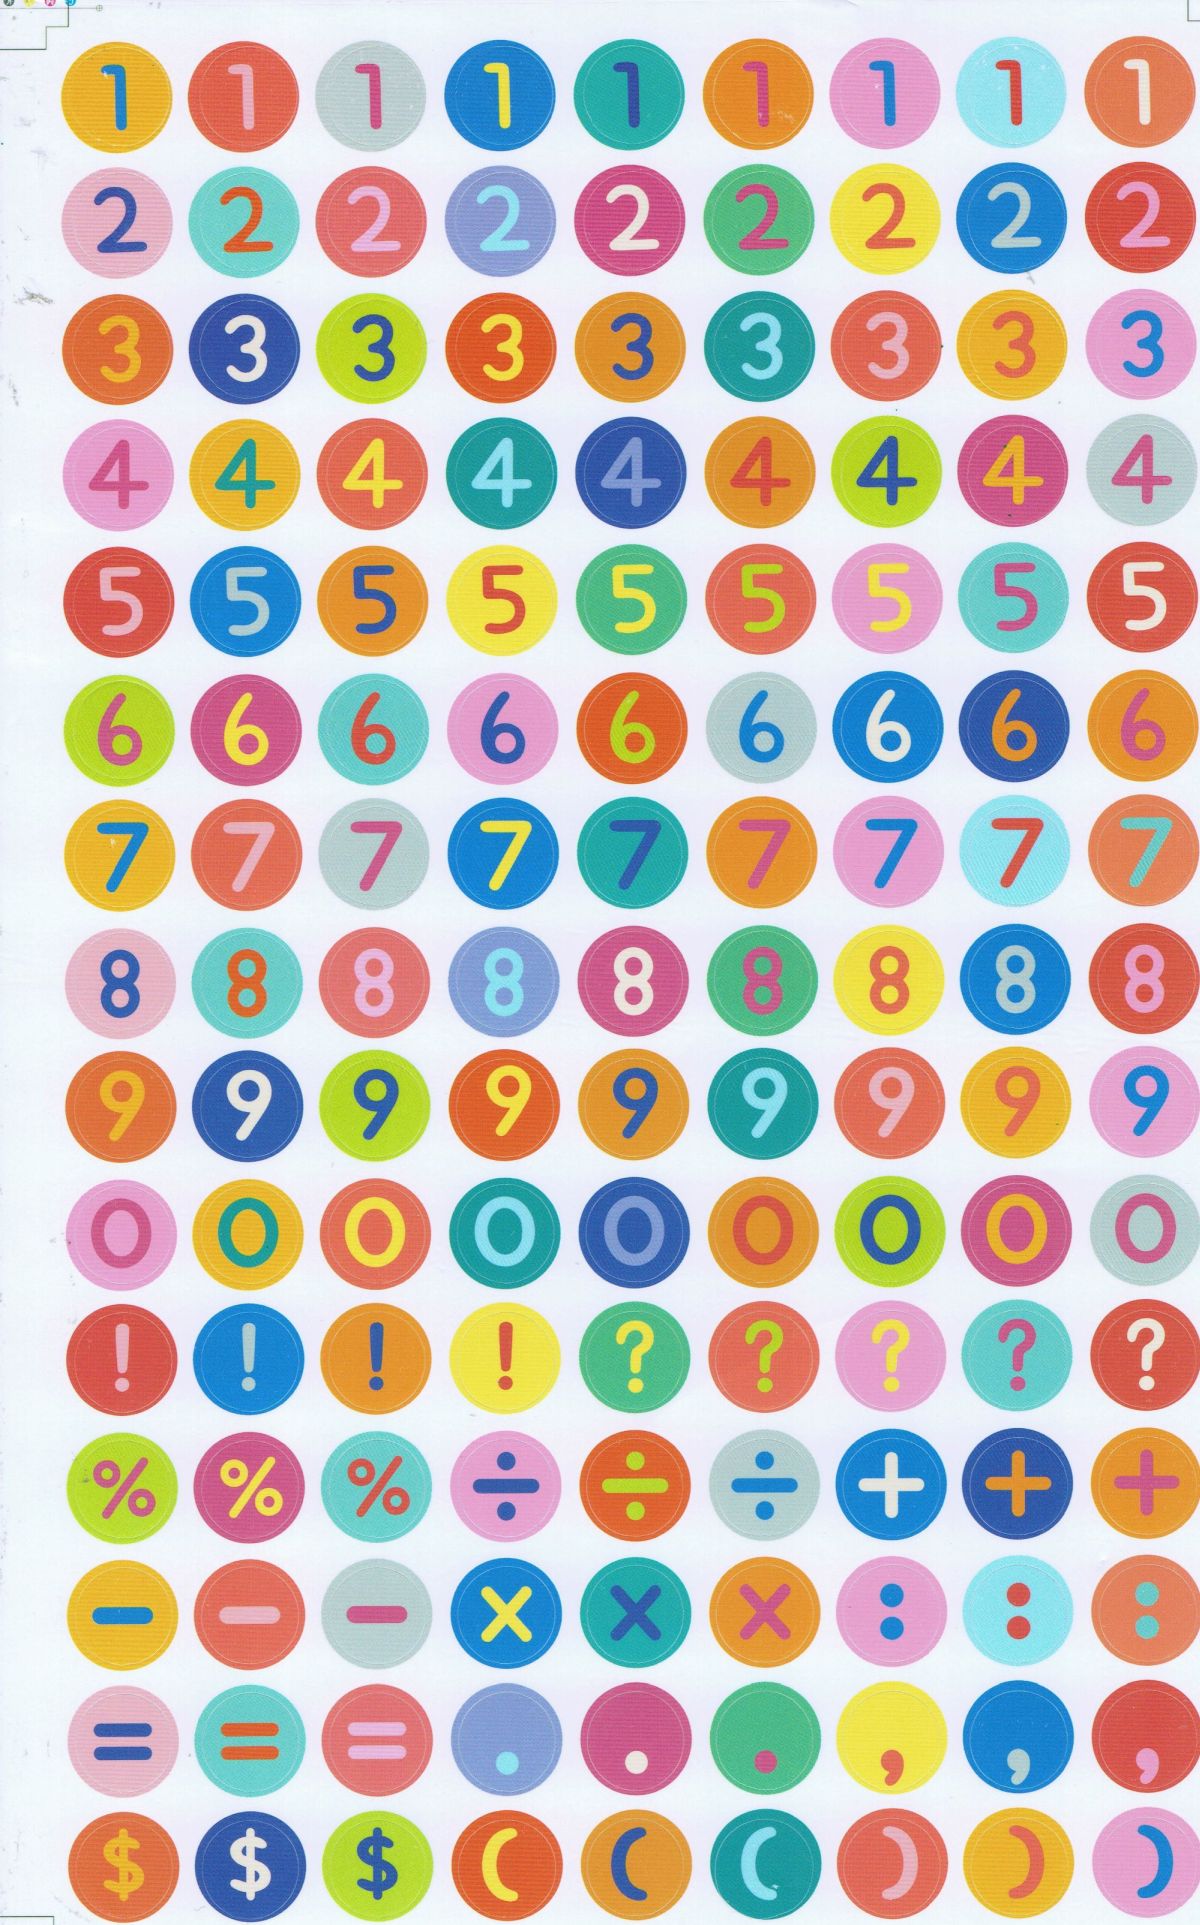 Numéros 123 autocollants colorés de 13 mm de haut pour dossiers de bureau enfants artisanat maternelle anniversaire 1 feuille 526